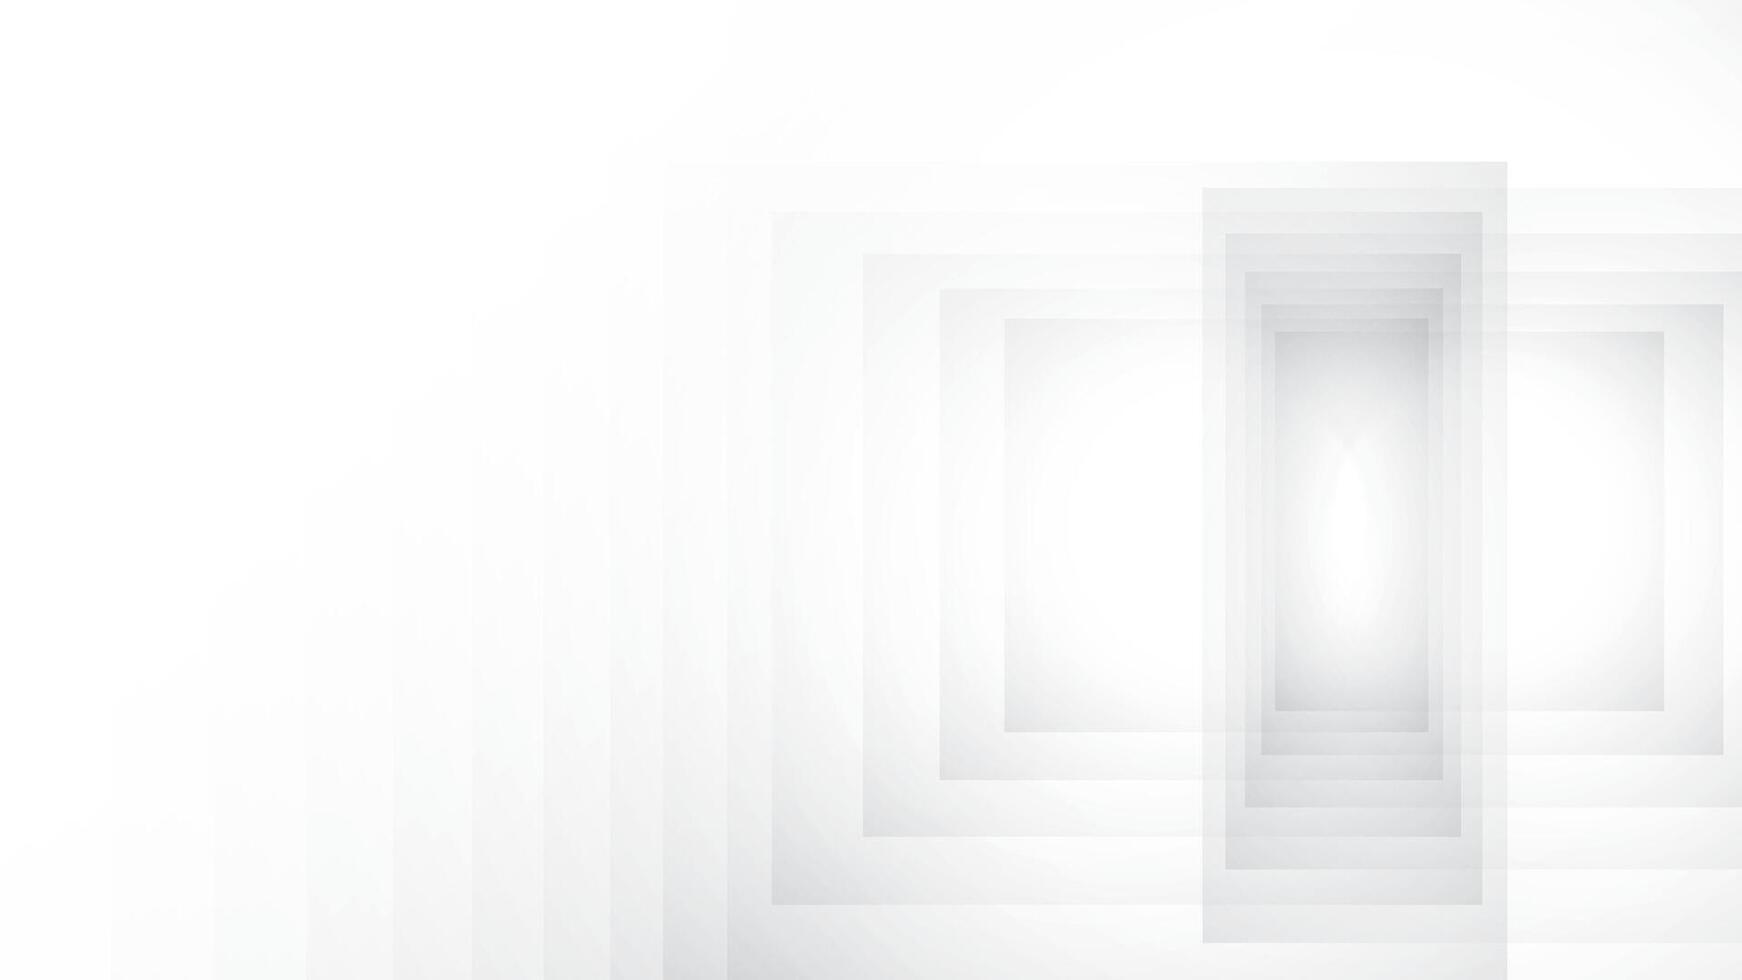 abstrakt geometrisch Weiß und grau Farbe Hintergrund mit Rechteck Form. Vektor Illustration.